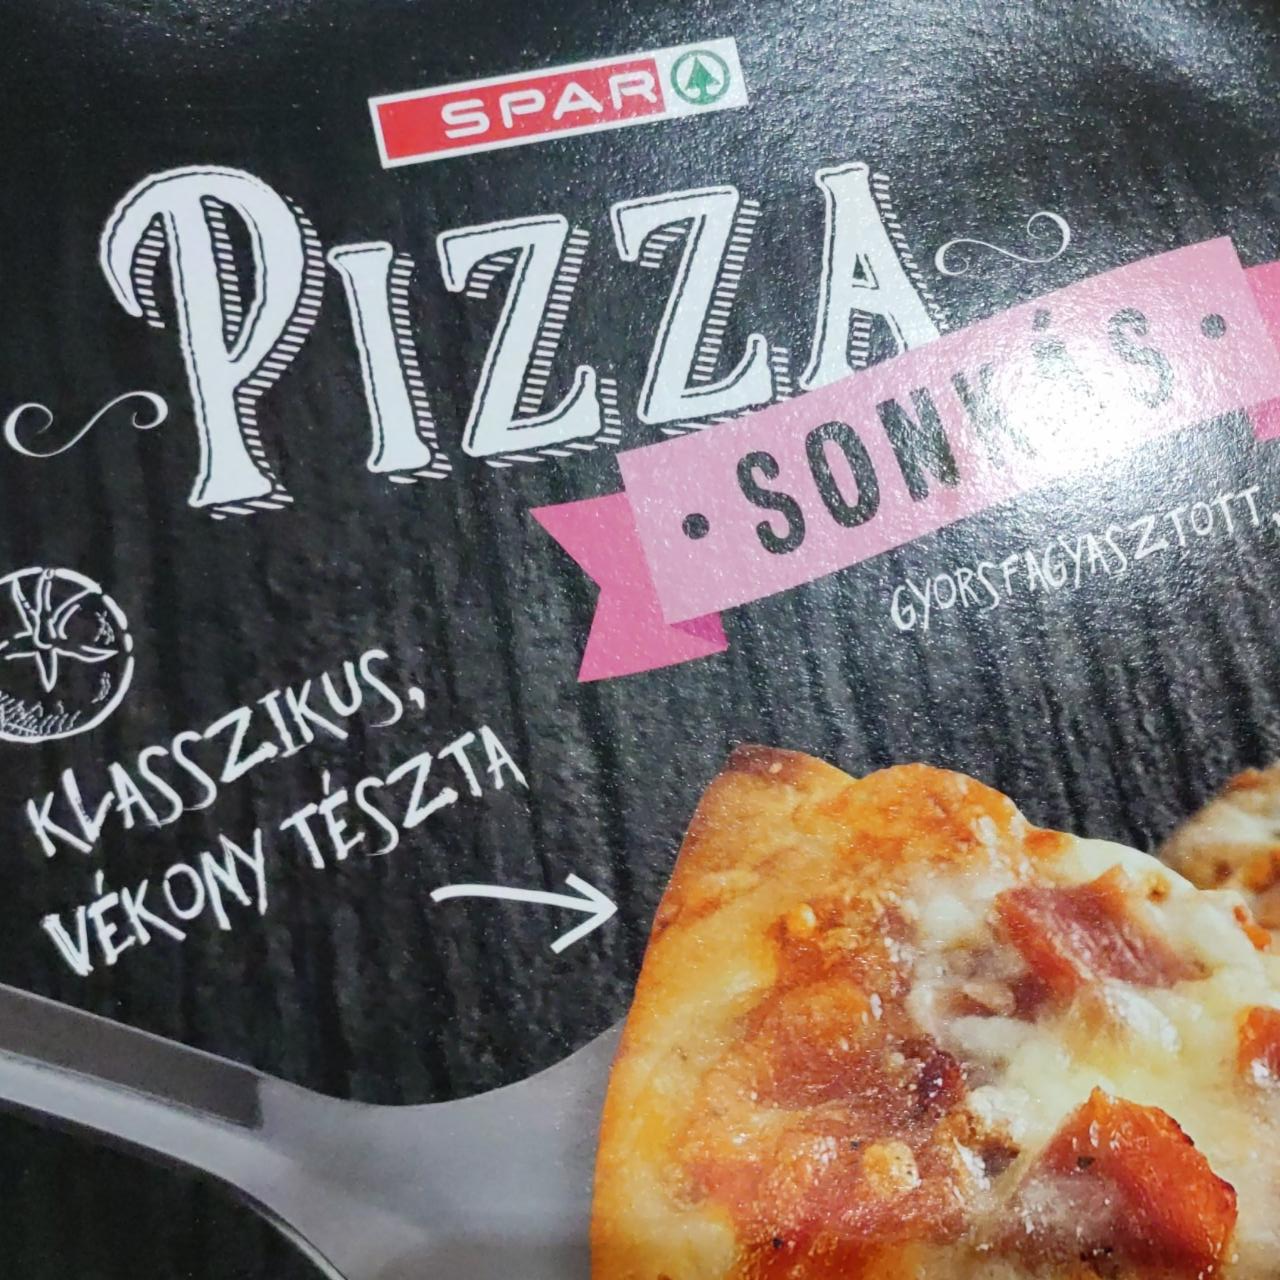 Képek - Pizza Sonkás vékony tésztás Spar